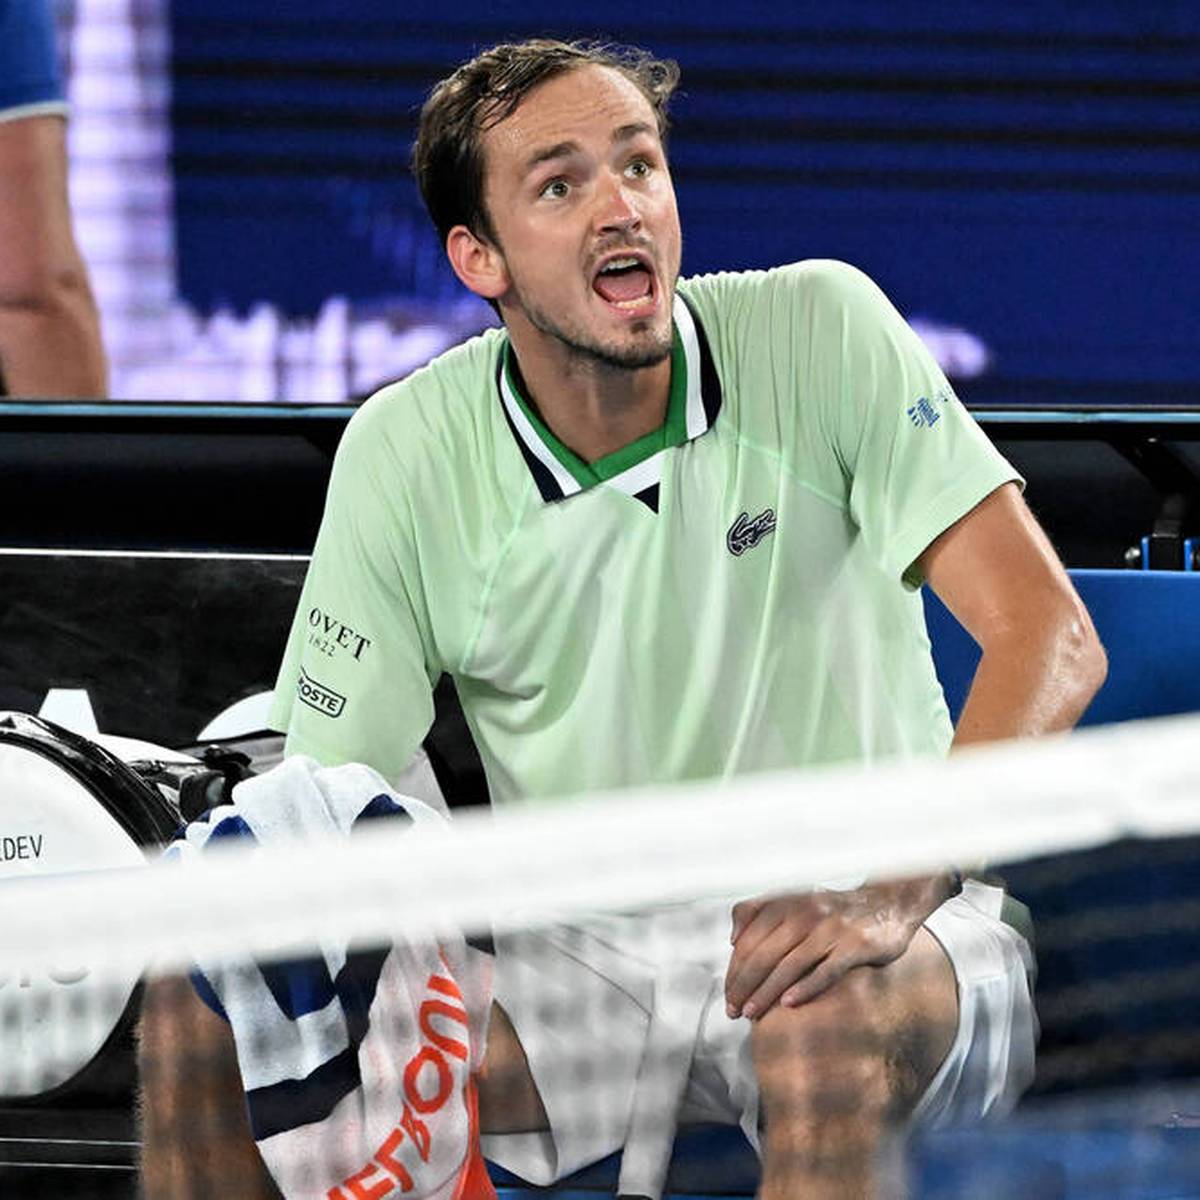 Daniil Medvedev verliert im Halbfinale der Australian Open komplett die Nerven und beleidigt den Schiedsrichter mehrfach. Am Ende setzt er sich dennoch durch.